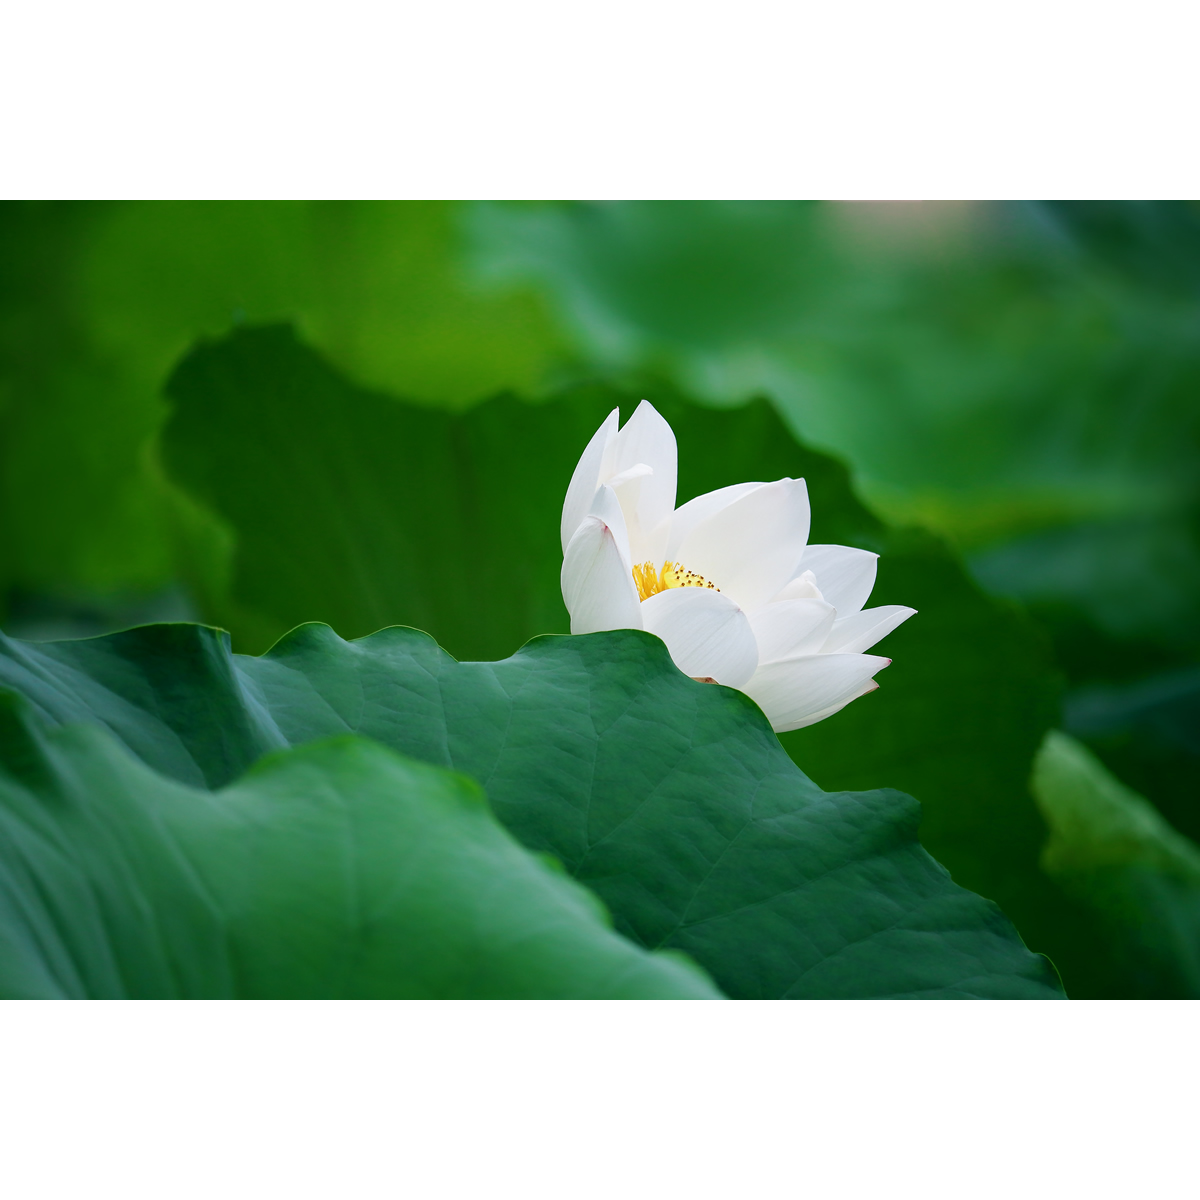 原创高清花卉生态摄影-纯白荷花/白莲花(1张) 高分辨率图片